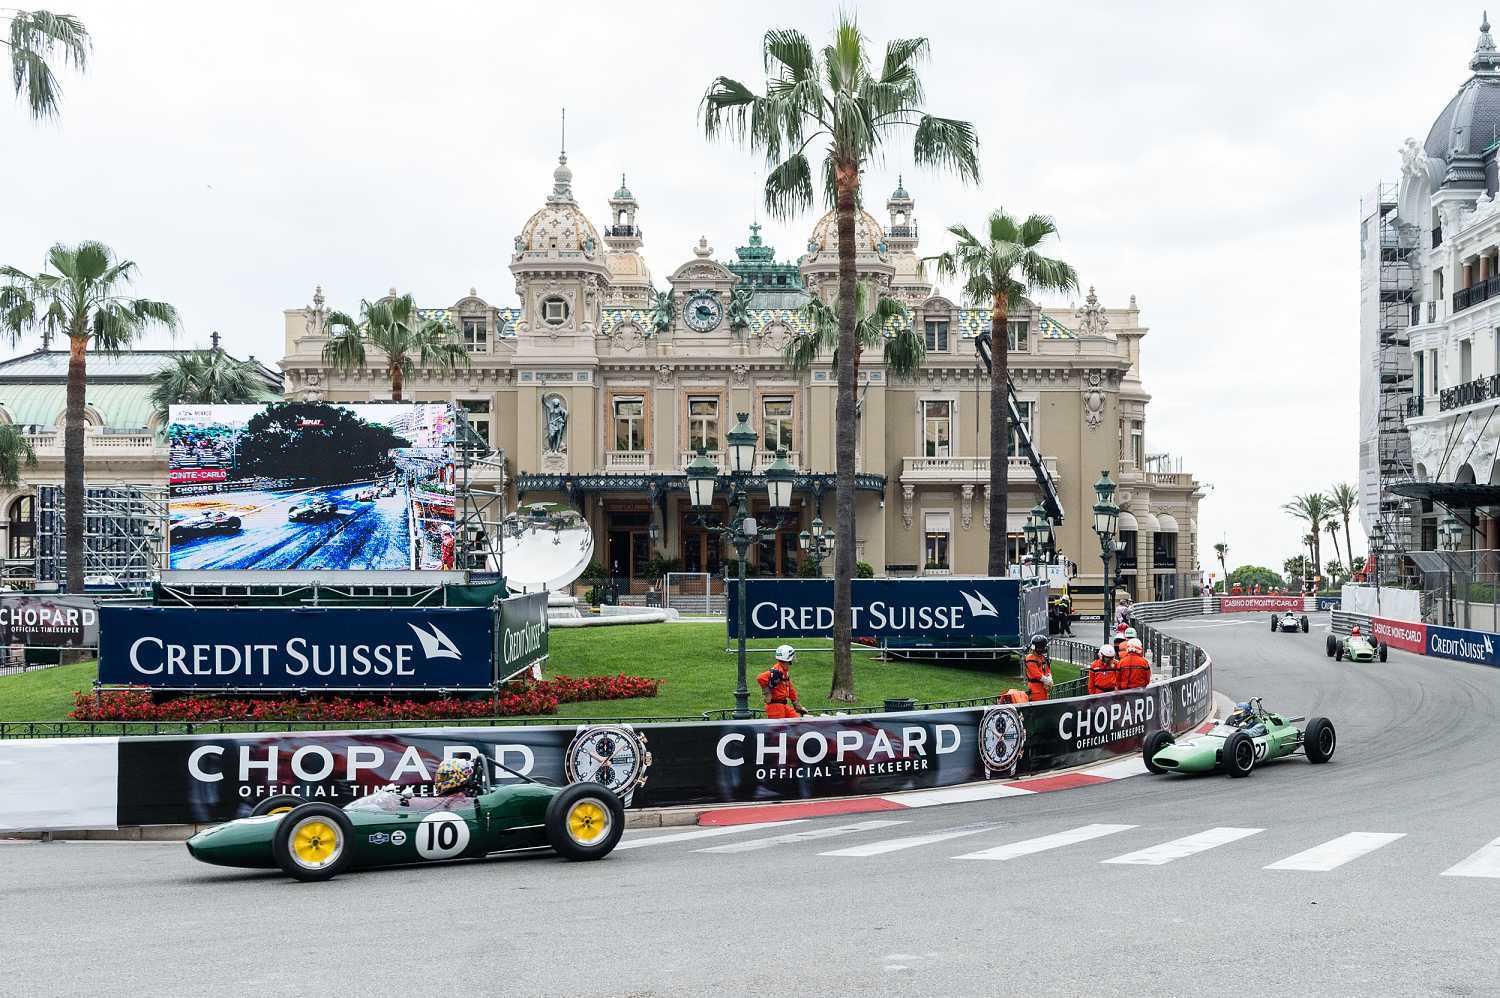 Chopard oficiální časomíra Grand Prix de Monaco 1 | Sportovní model hodinek Chopard představen na akci Porsche